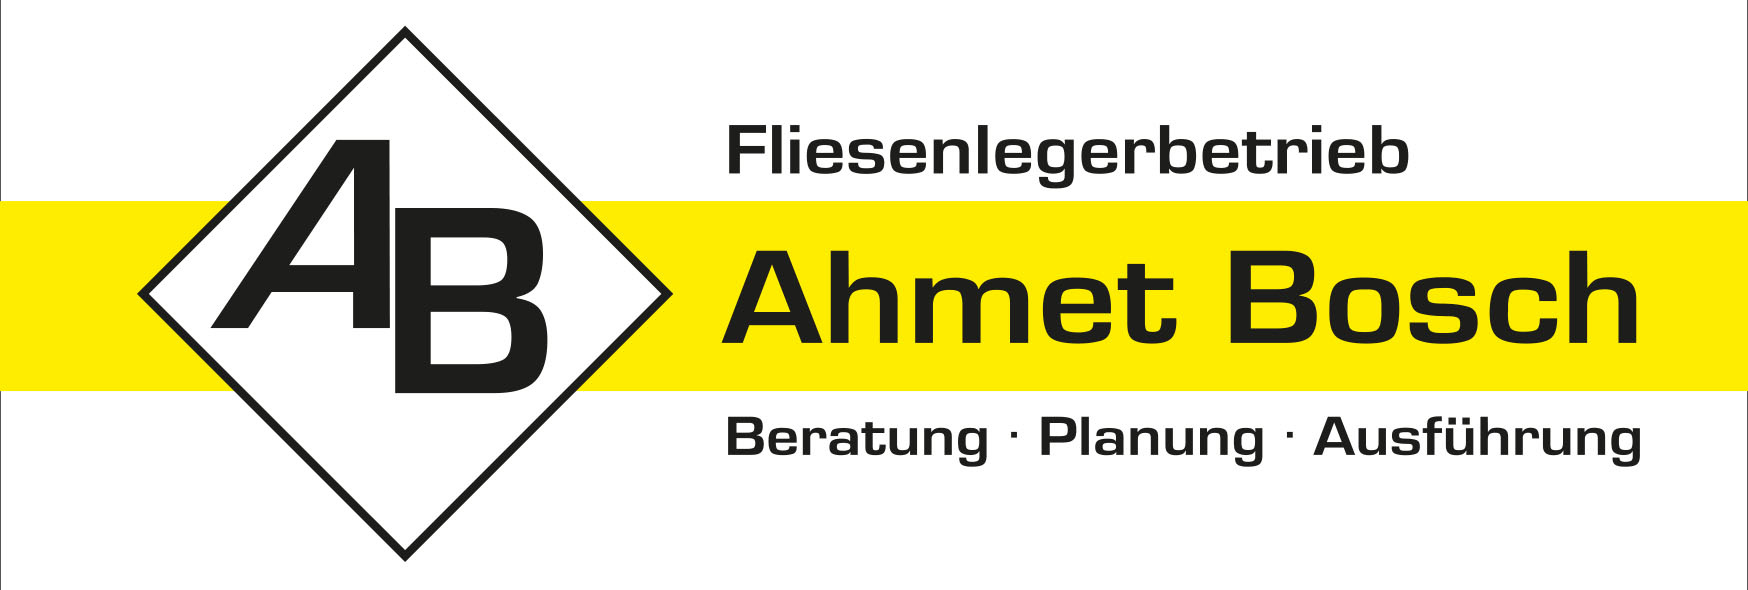 Ahmet Bosch Fliesenlegerfachbetrieb aus Schwaigern-Massenbach